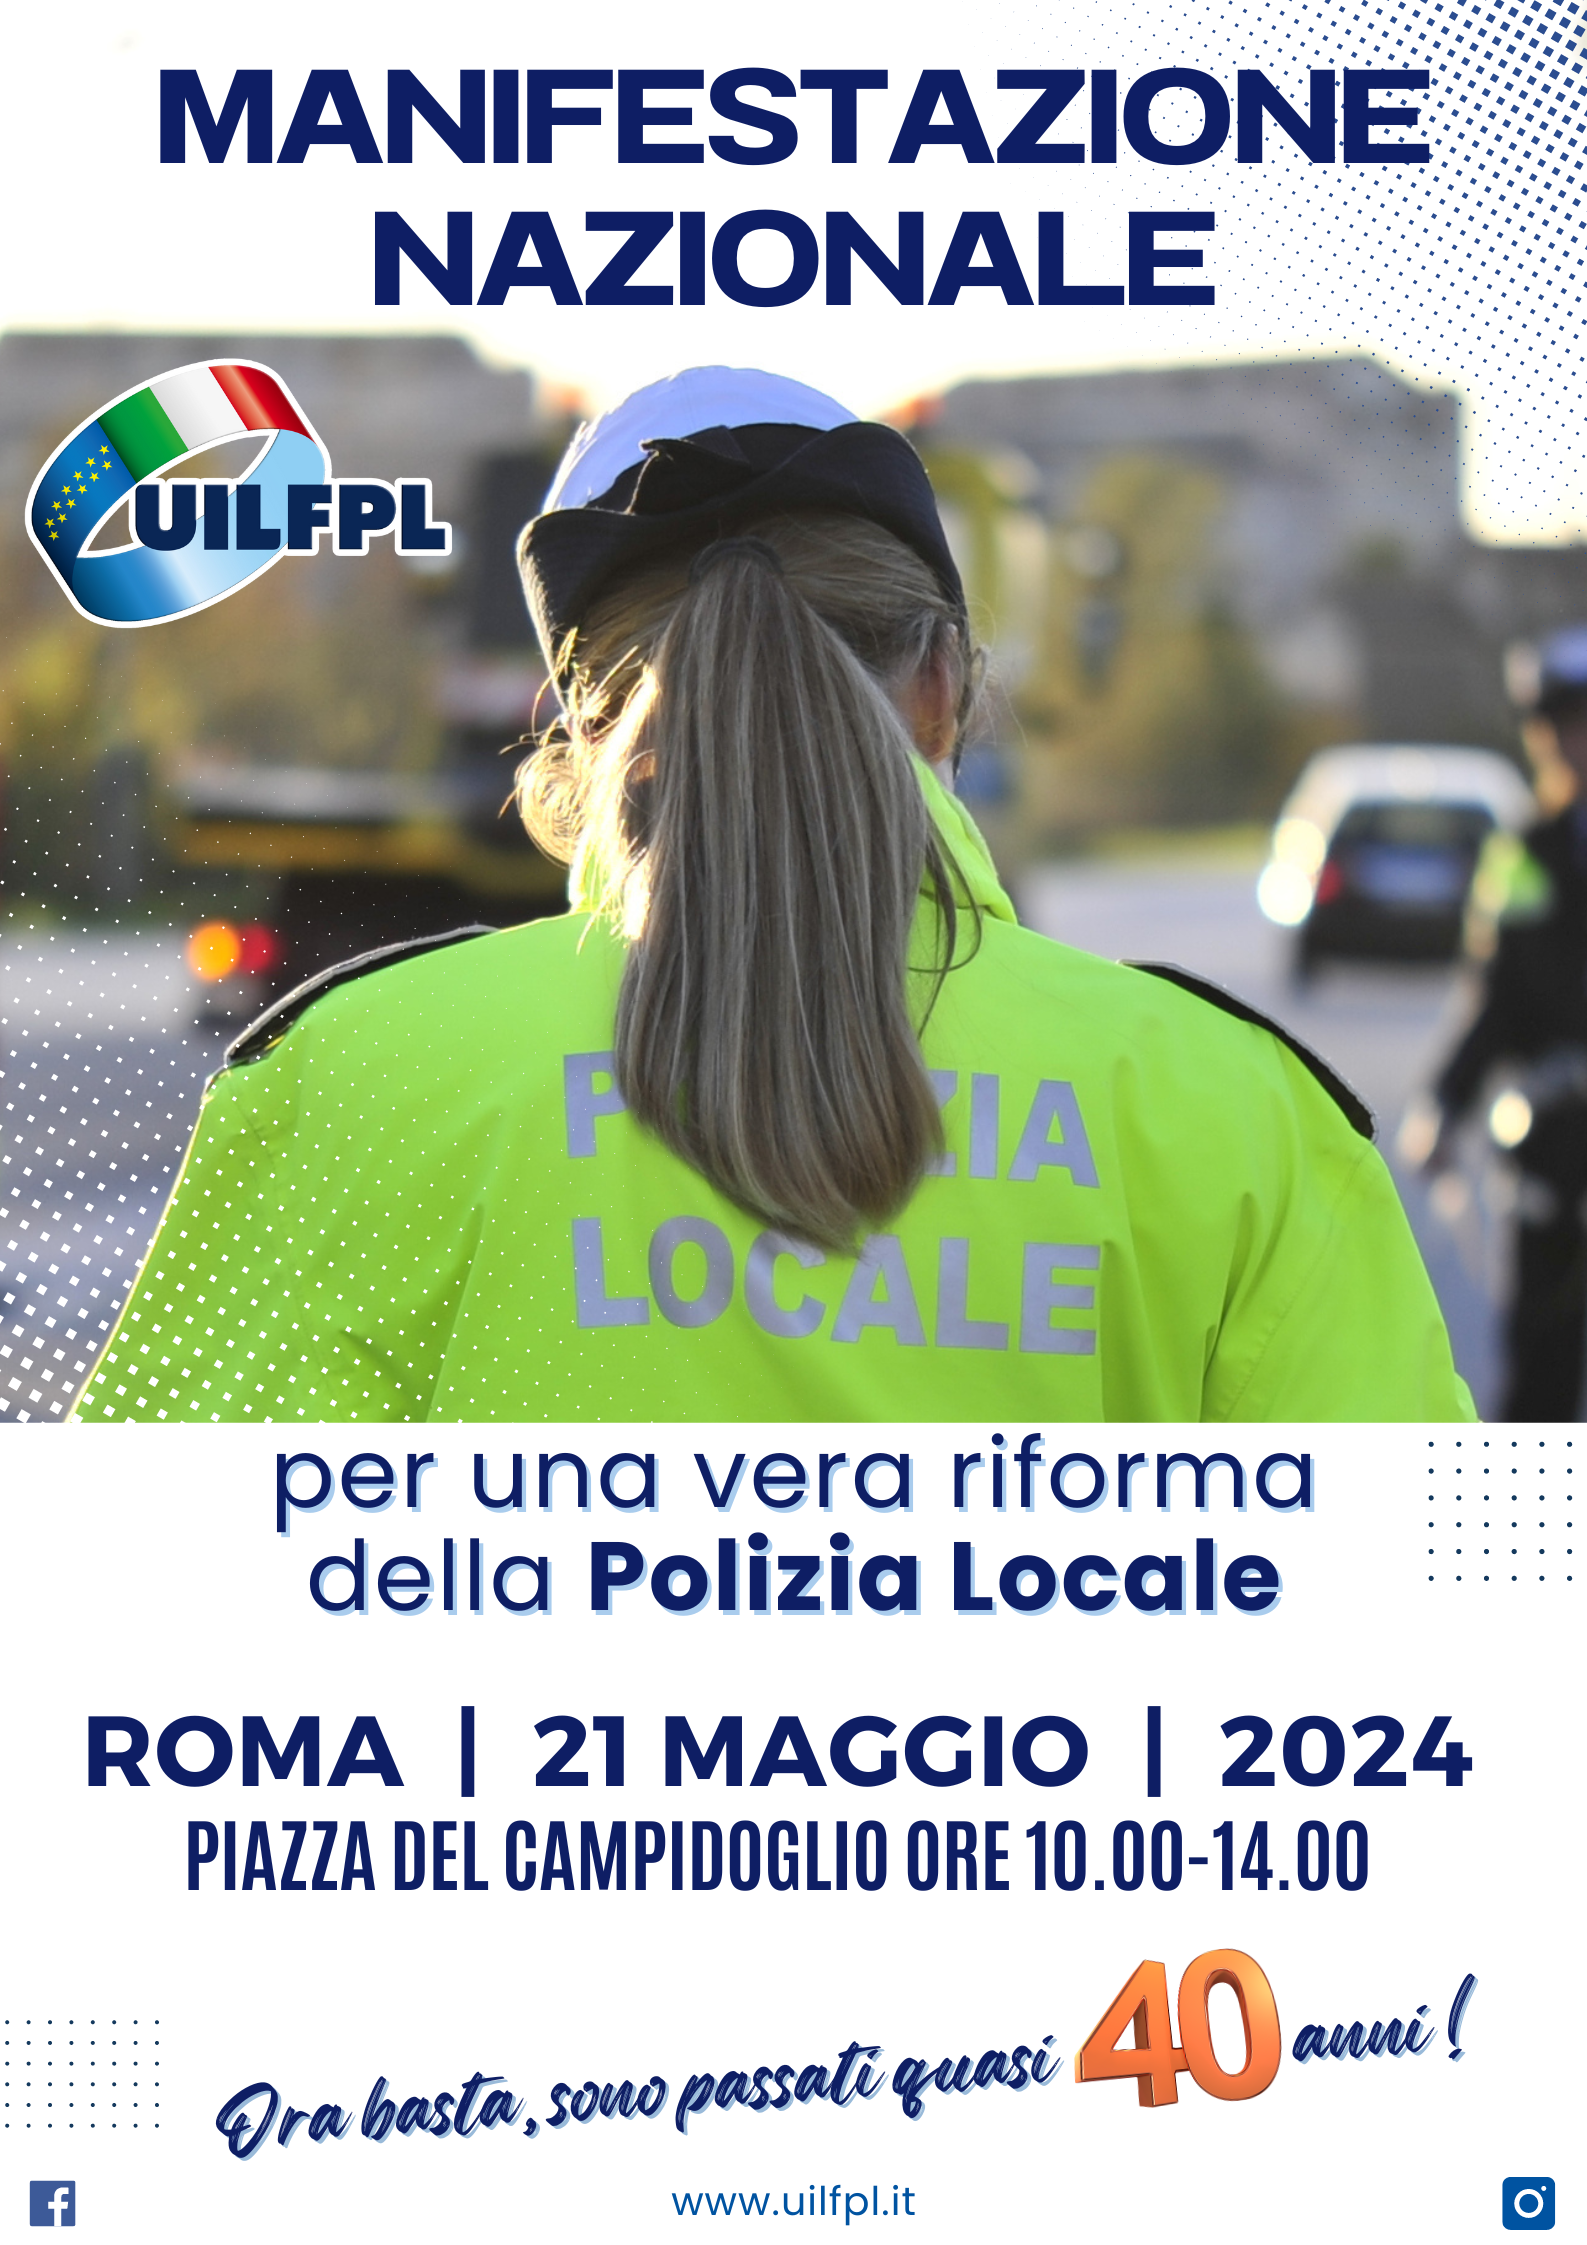 Roma, 21 maggio 2024: manifestazione nazionale per una reale riforma della polizia locale